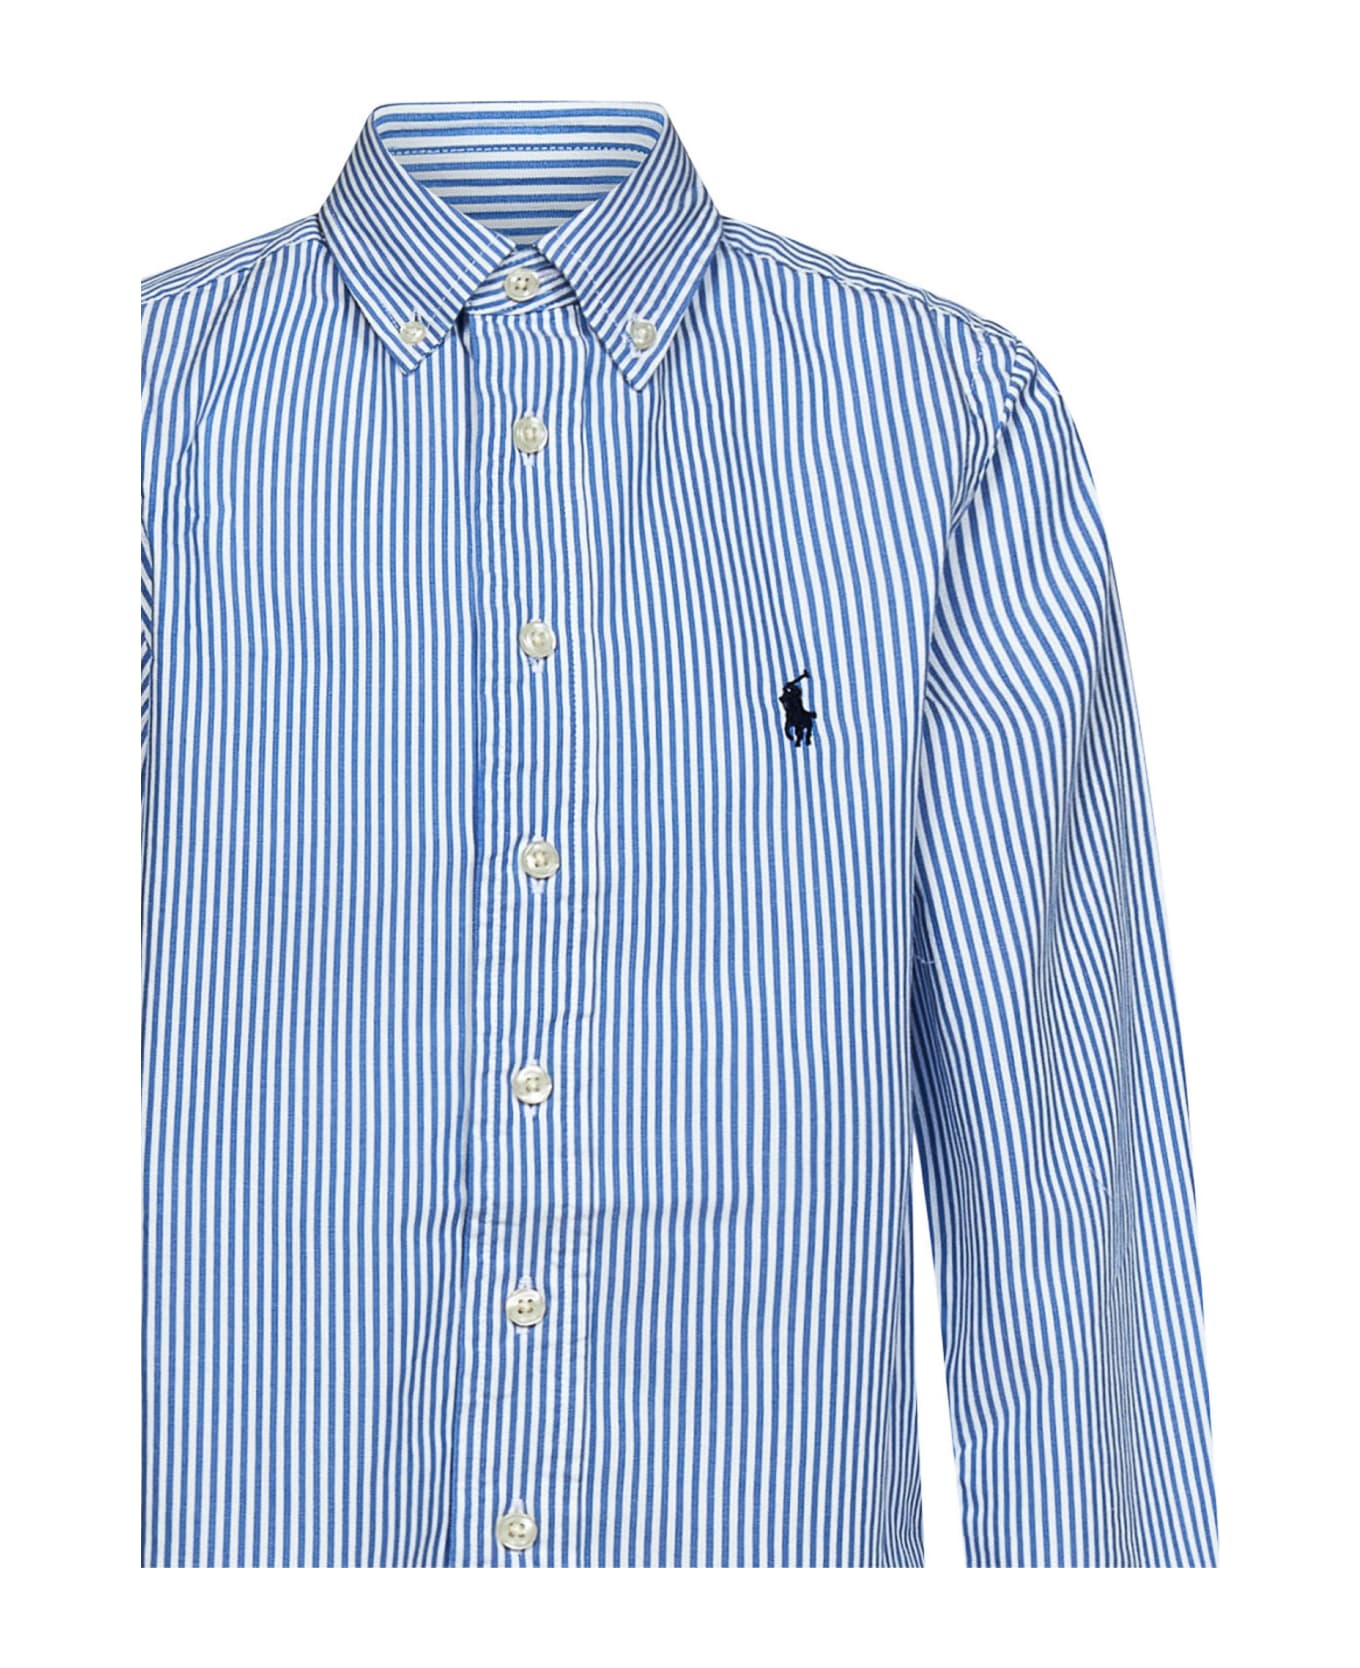 Polo Ralph Lauren Shirt - Blu e Bianco